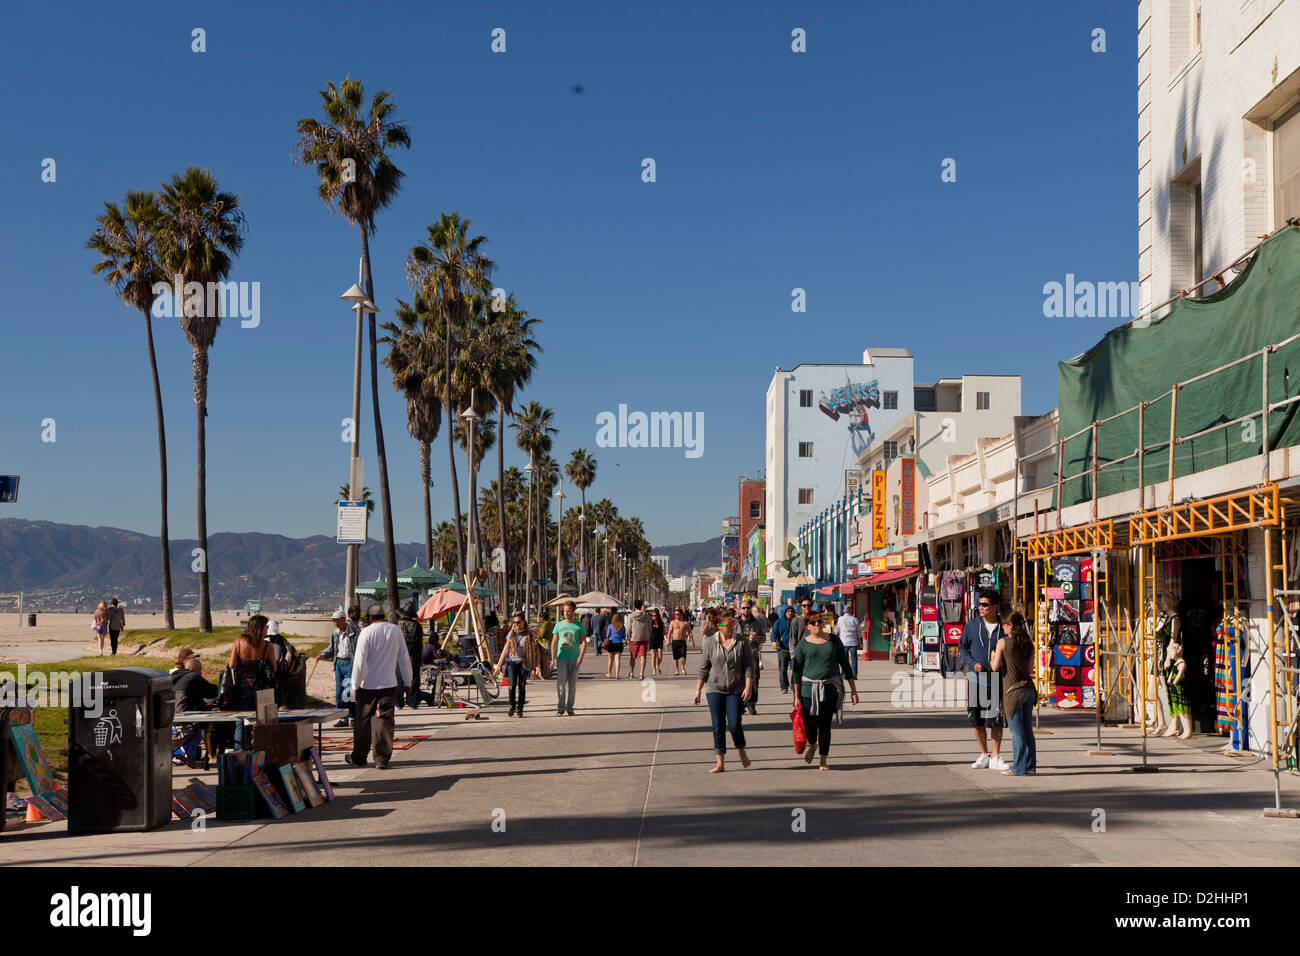 Ocean Front Walk in Venice Beach, Los Angeles, Californie, États-Unis d'Amérique, USA Banque D'Images